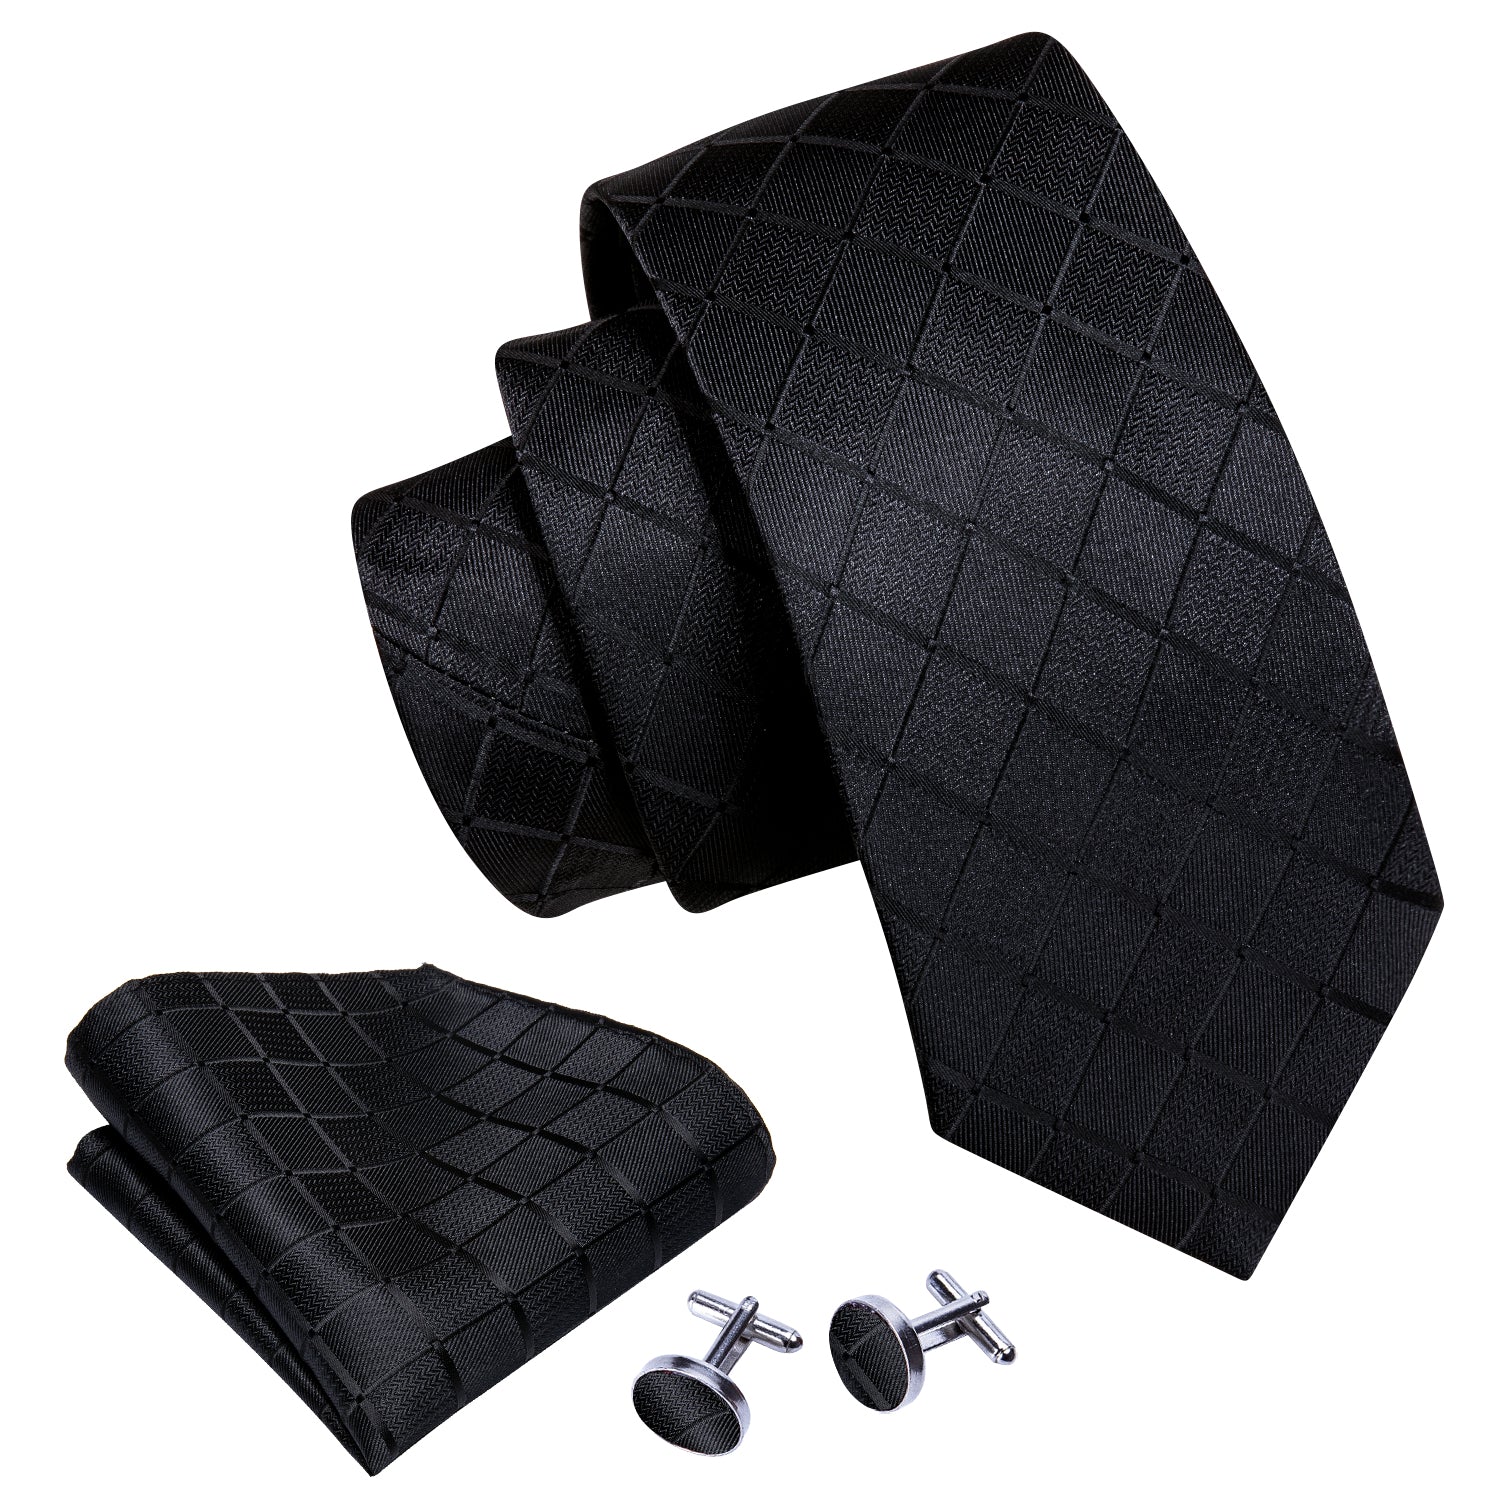 Barry.wang Black Tie Plaid Silk Men's Tie Set Tie Pocket Square Cufflinks Set